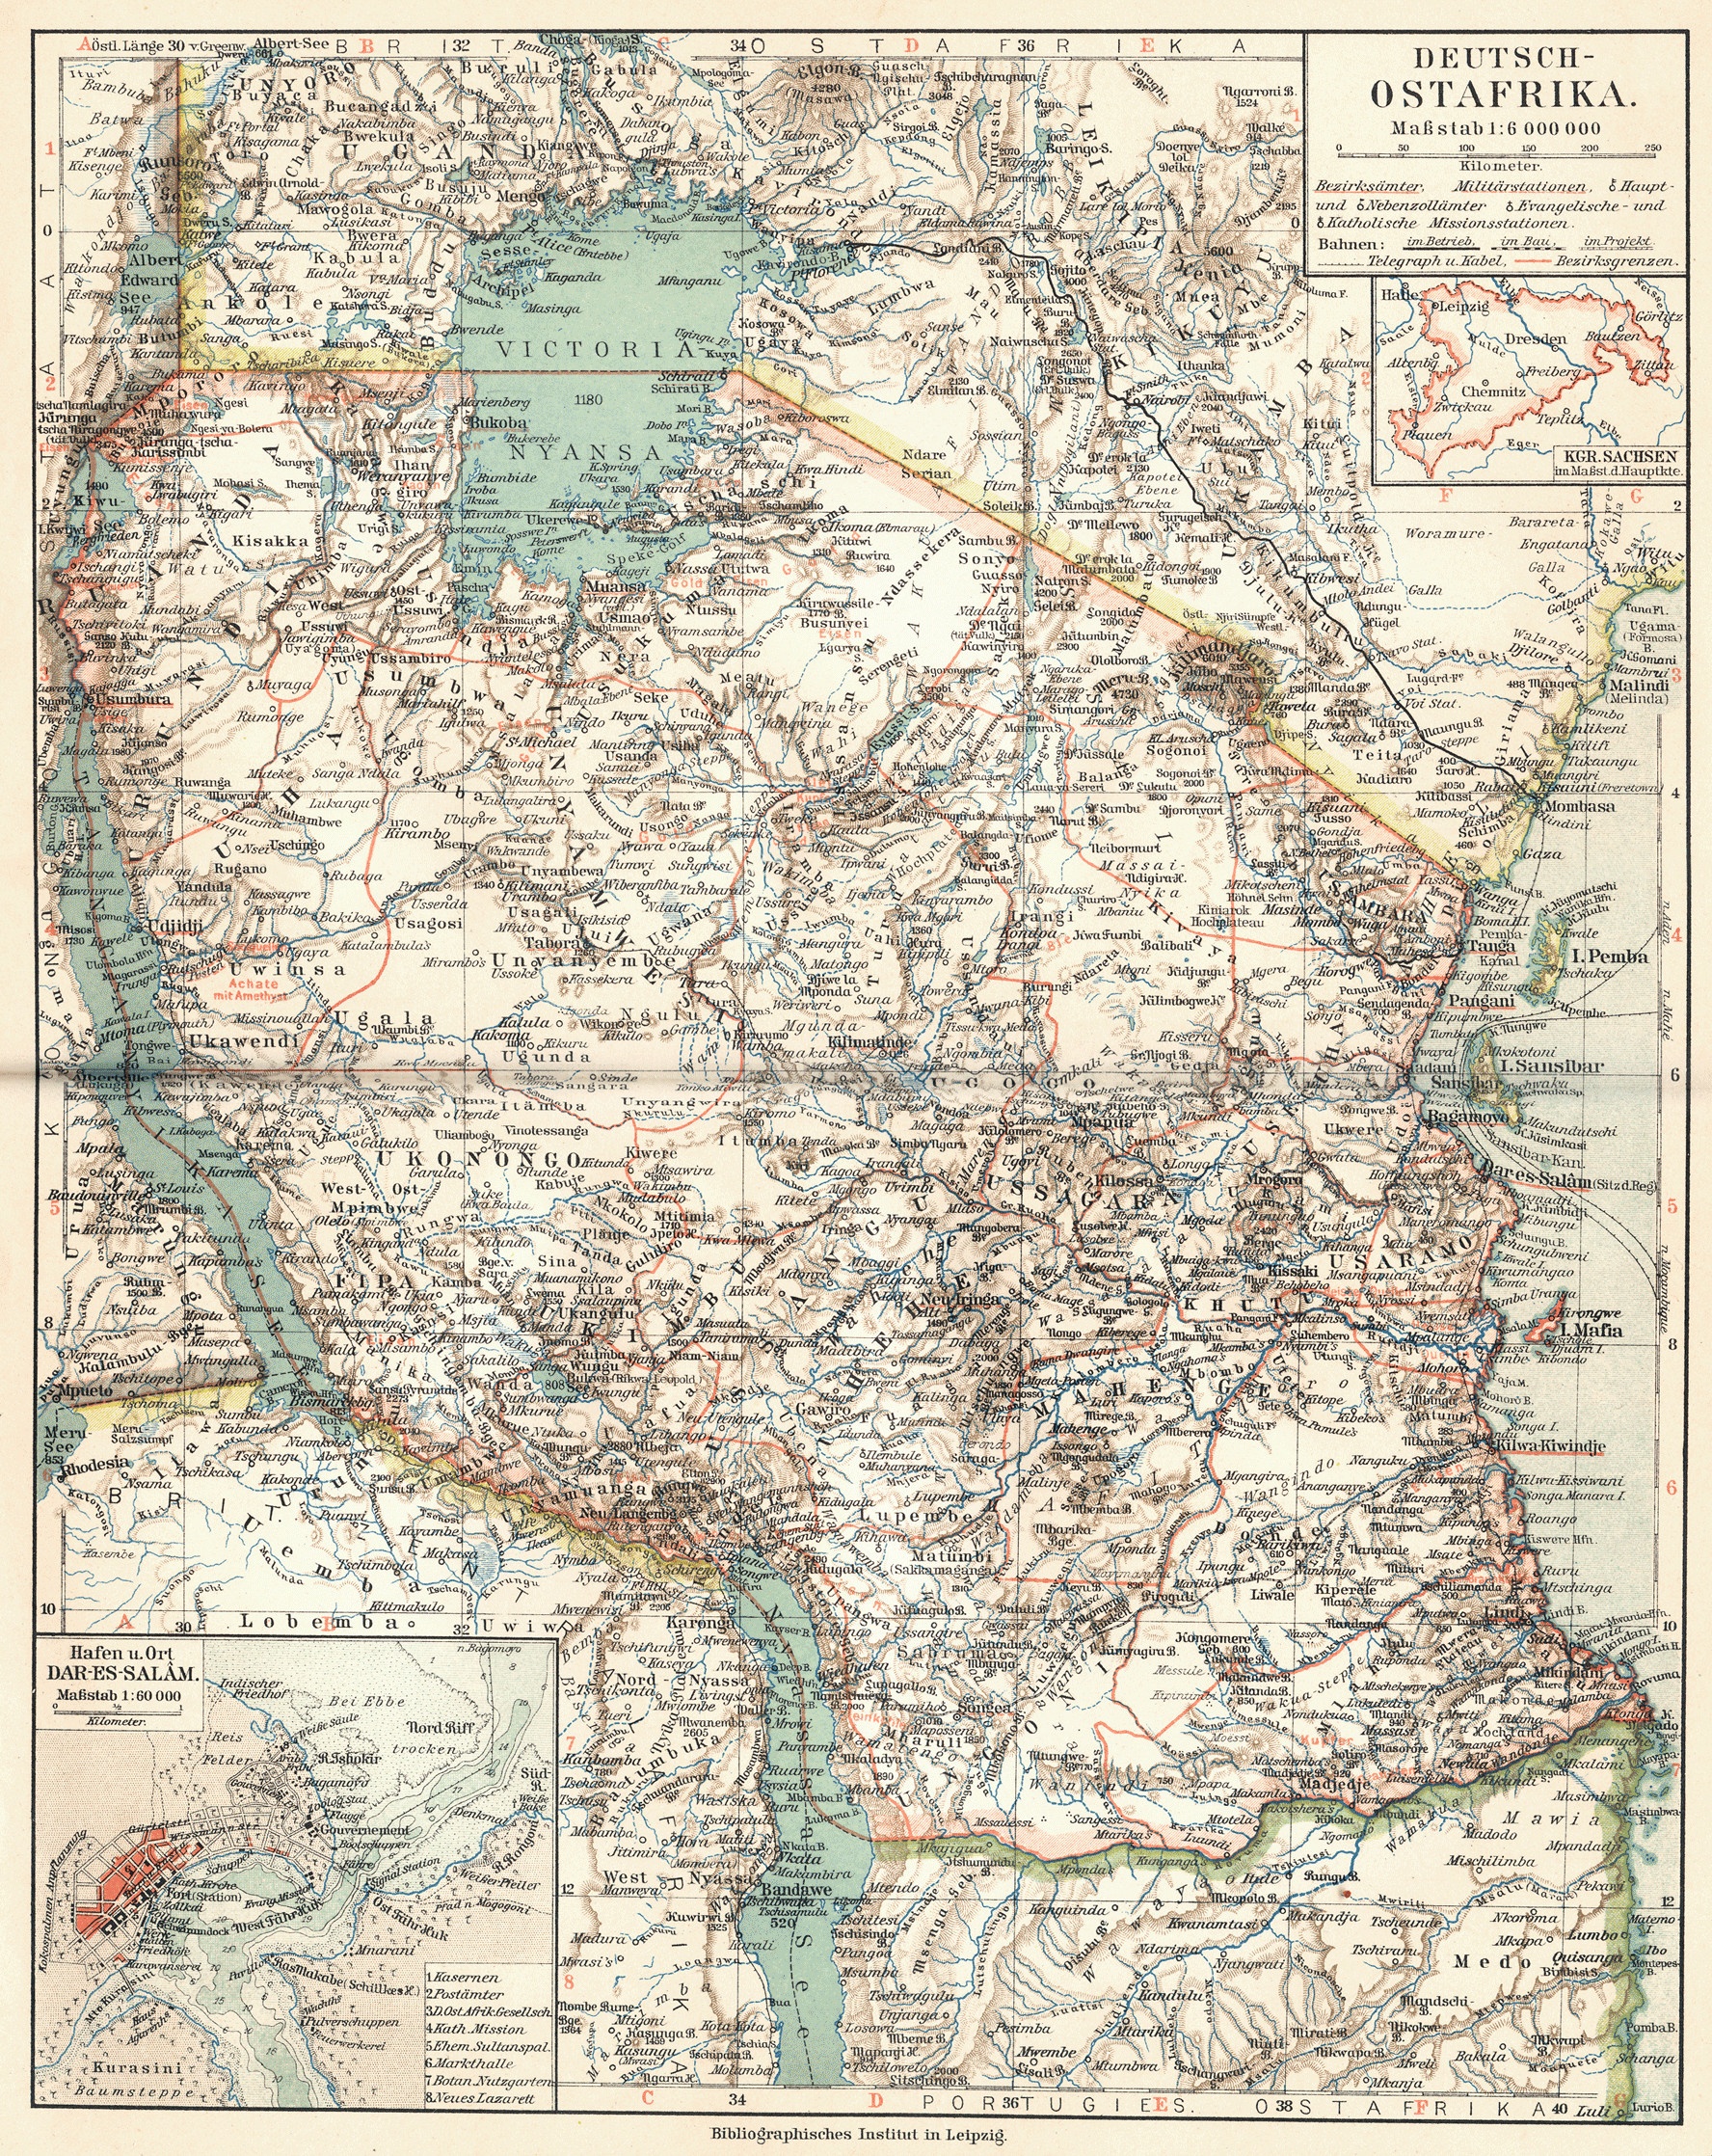 bdi burundi 094 deutsch ostafrika 1905